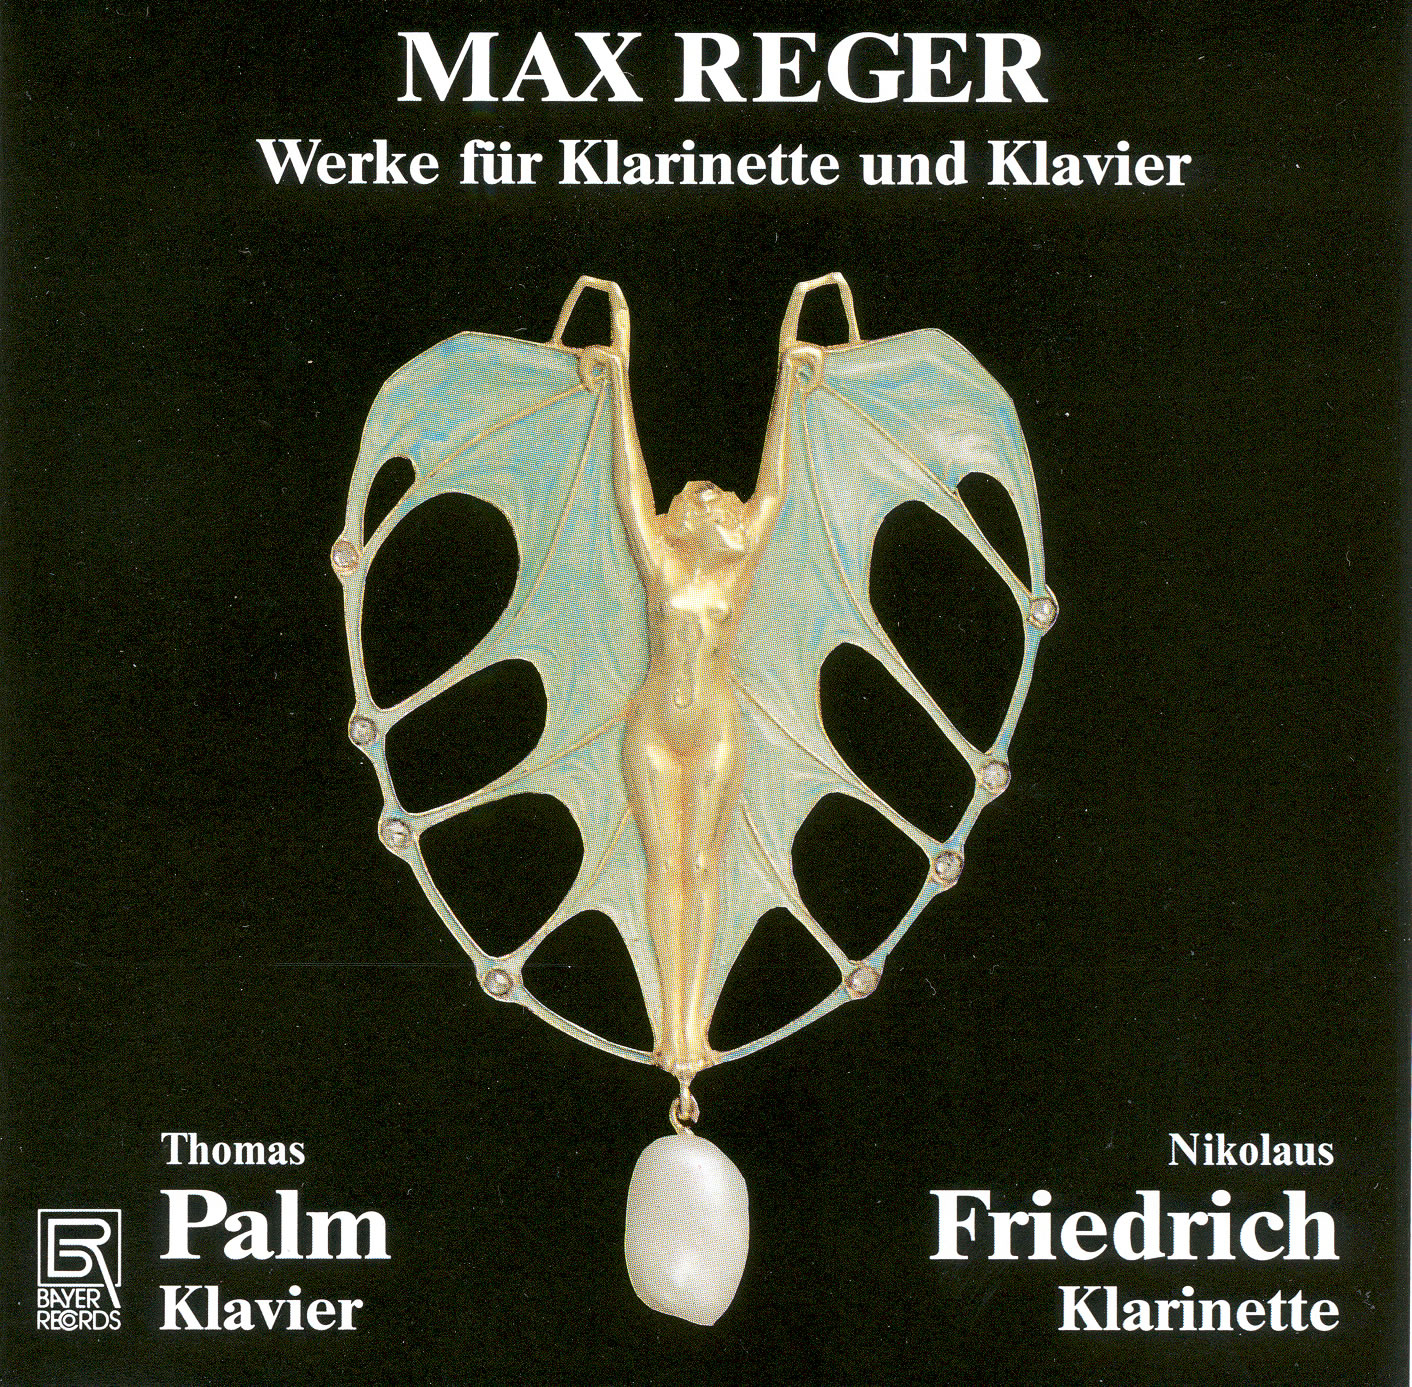 Max Reger - Werke für Klarinette